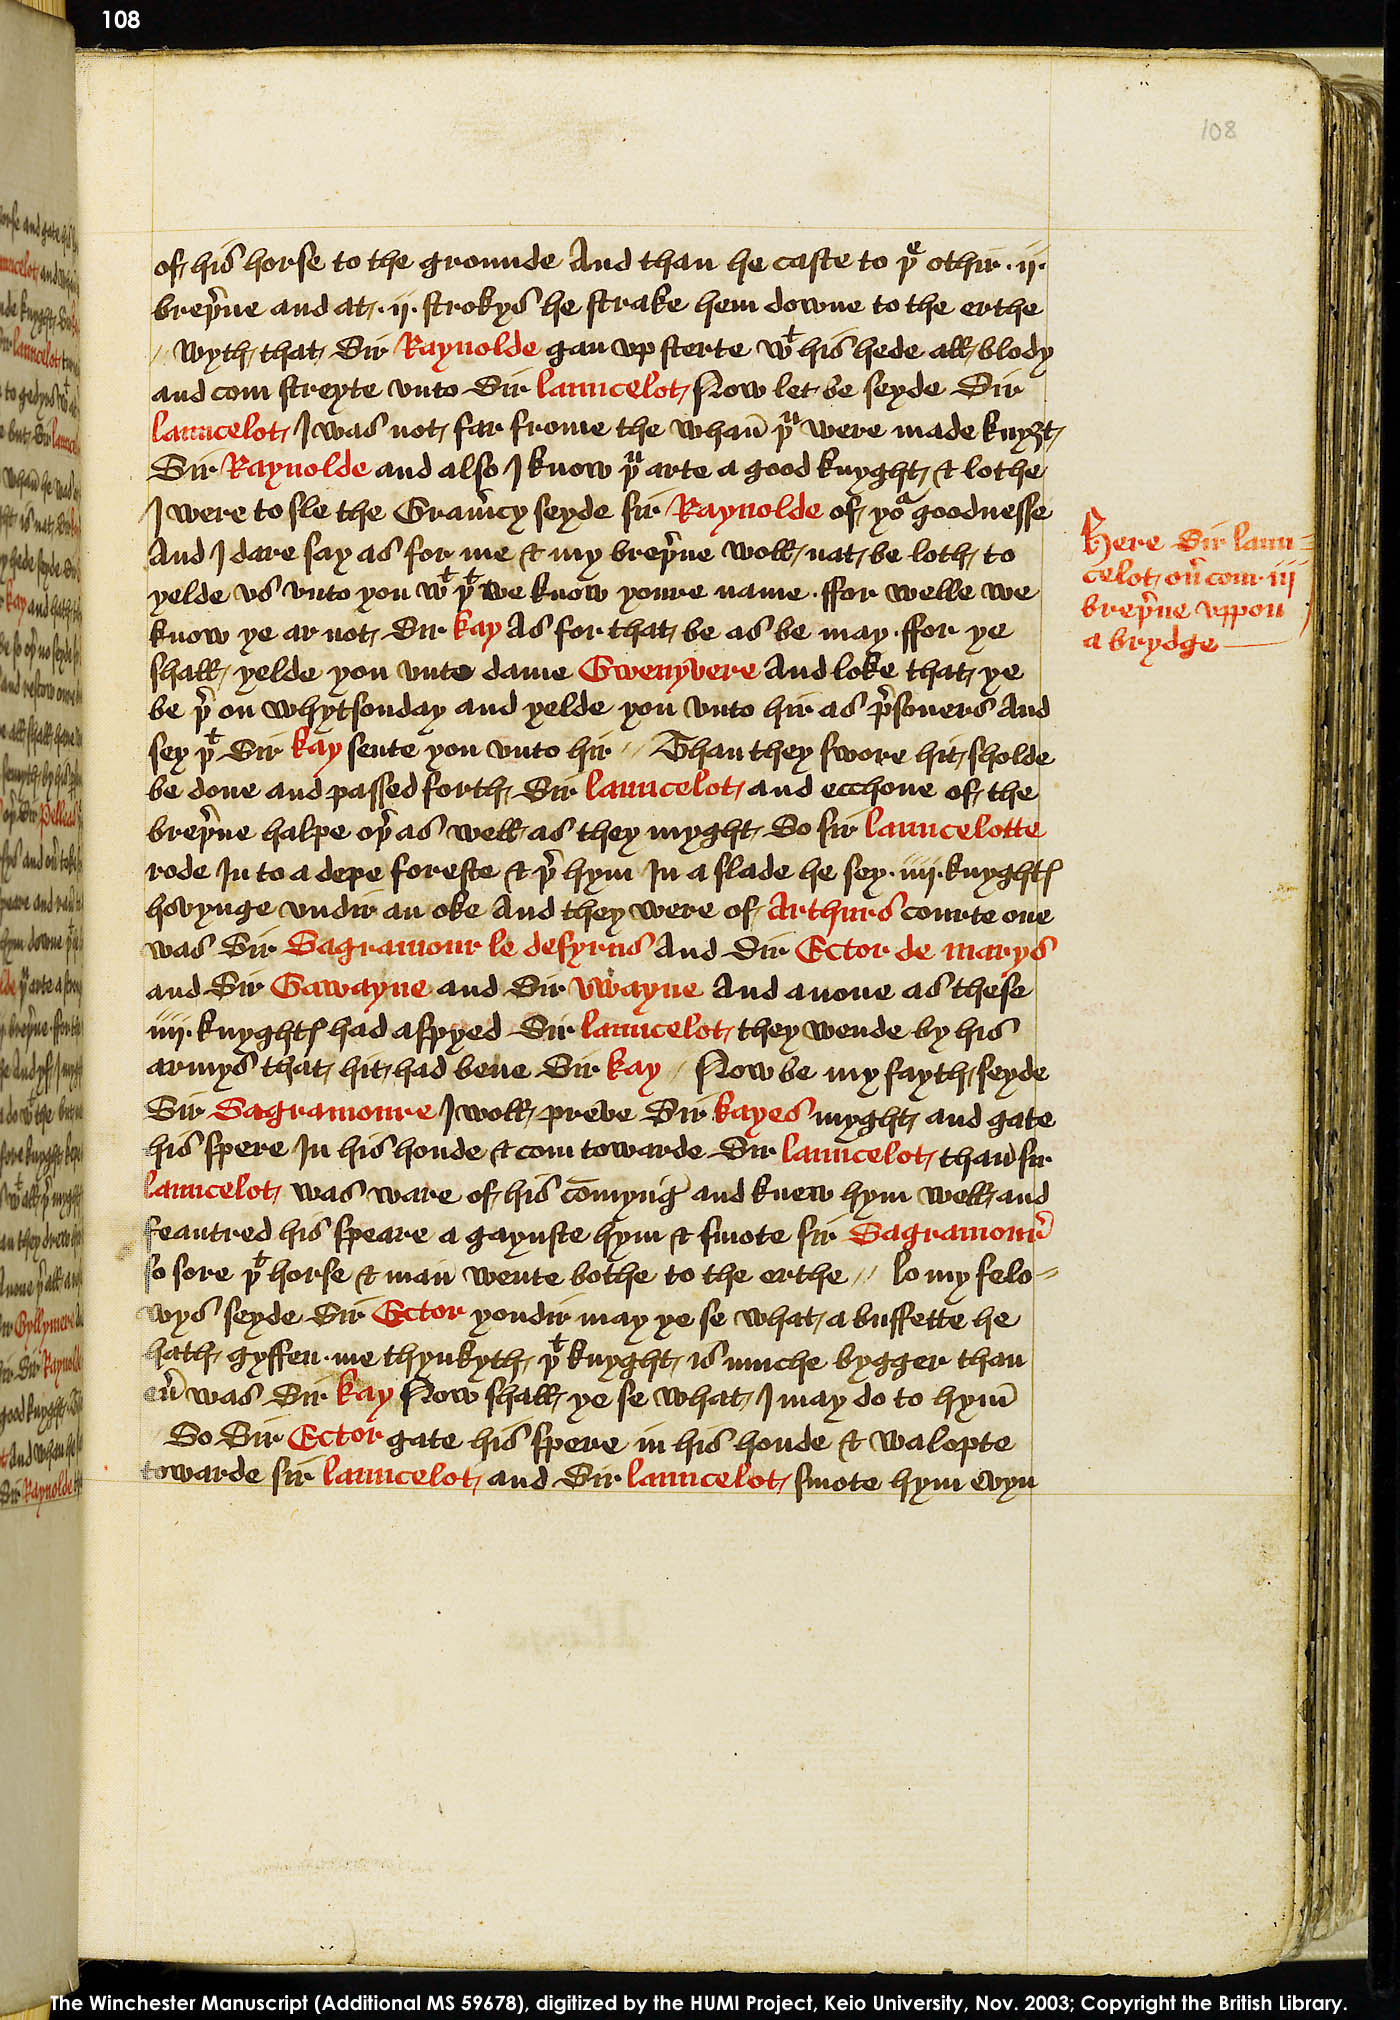 Folio 108r